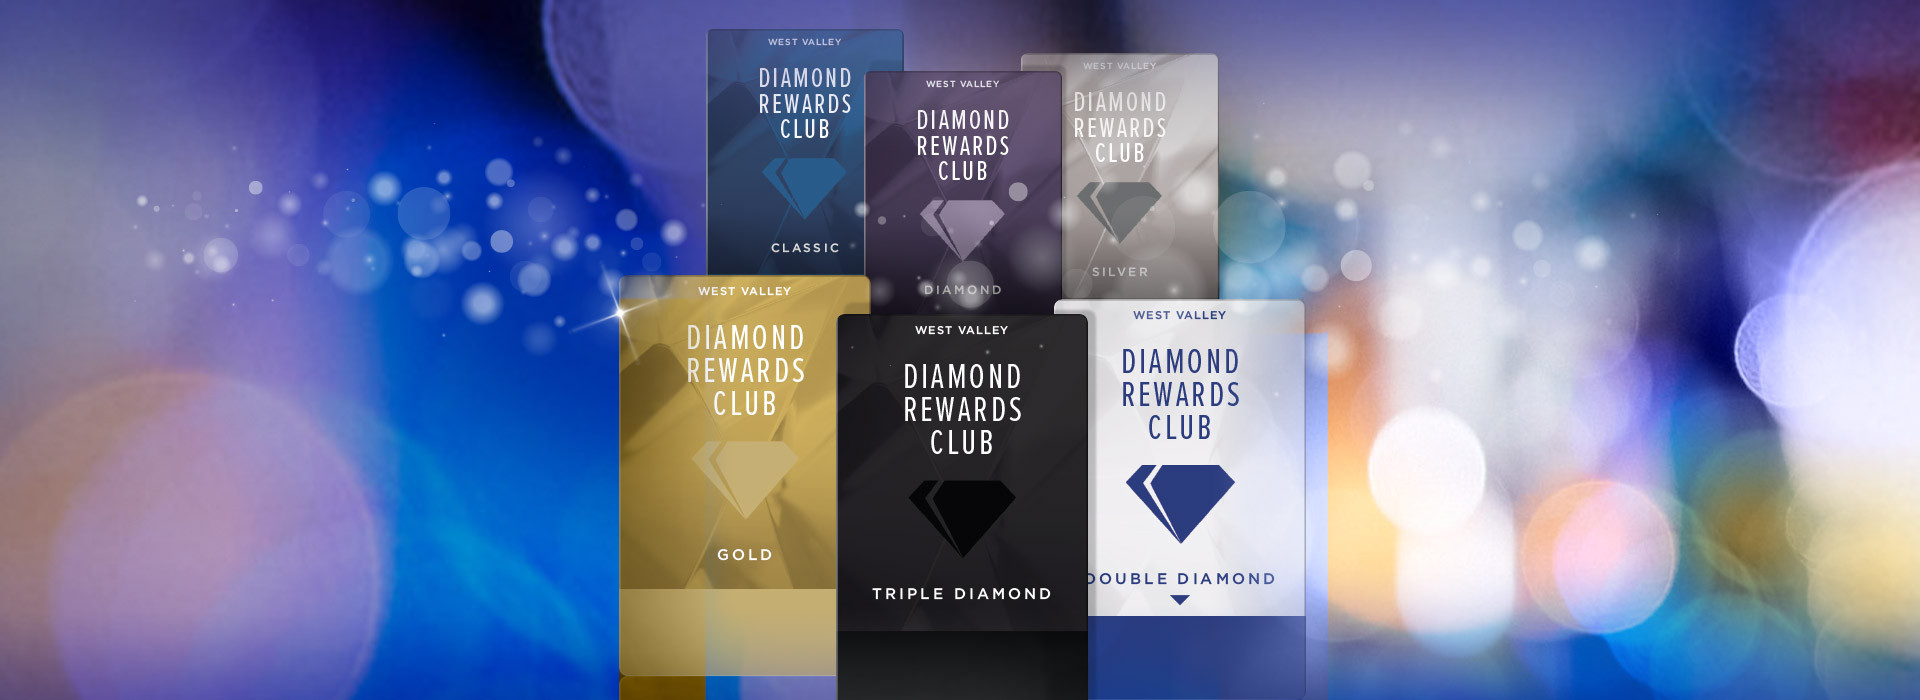 diamond card rewards